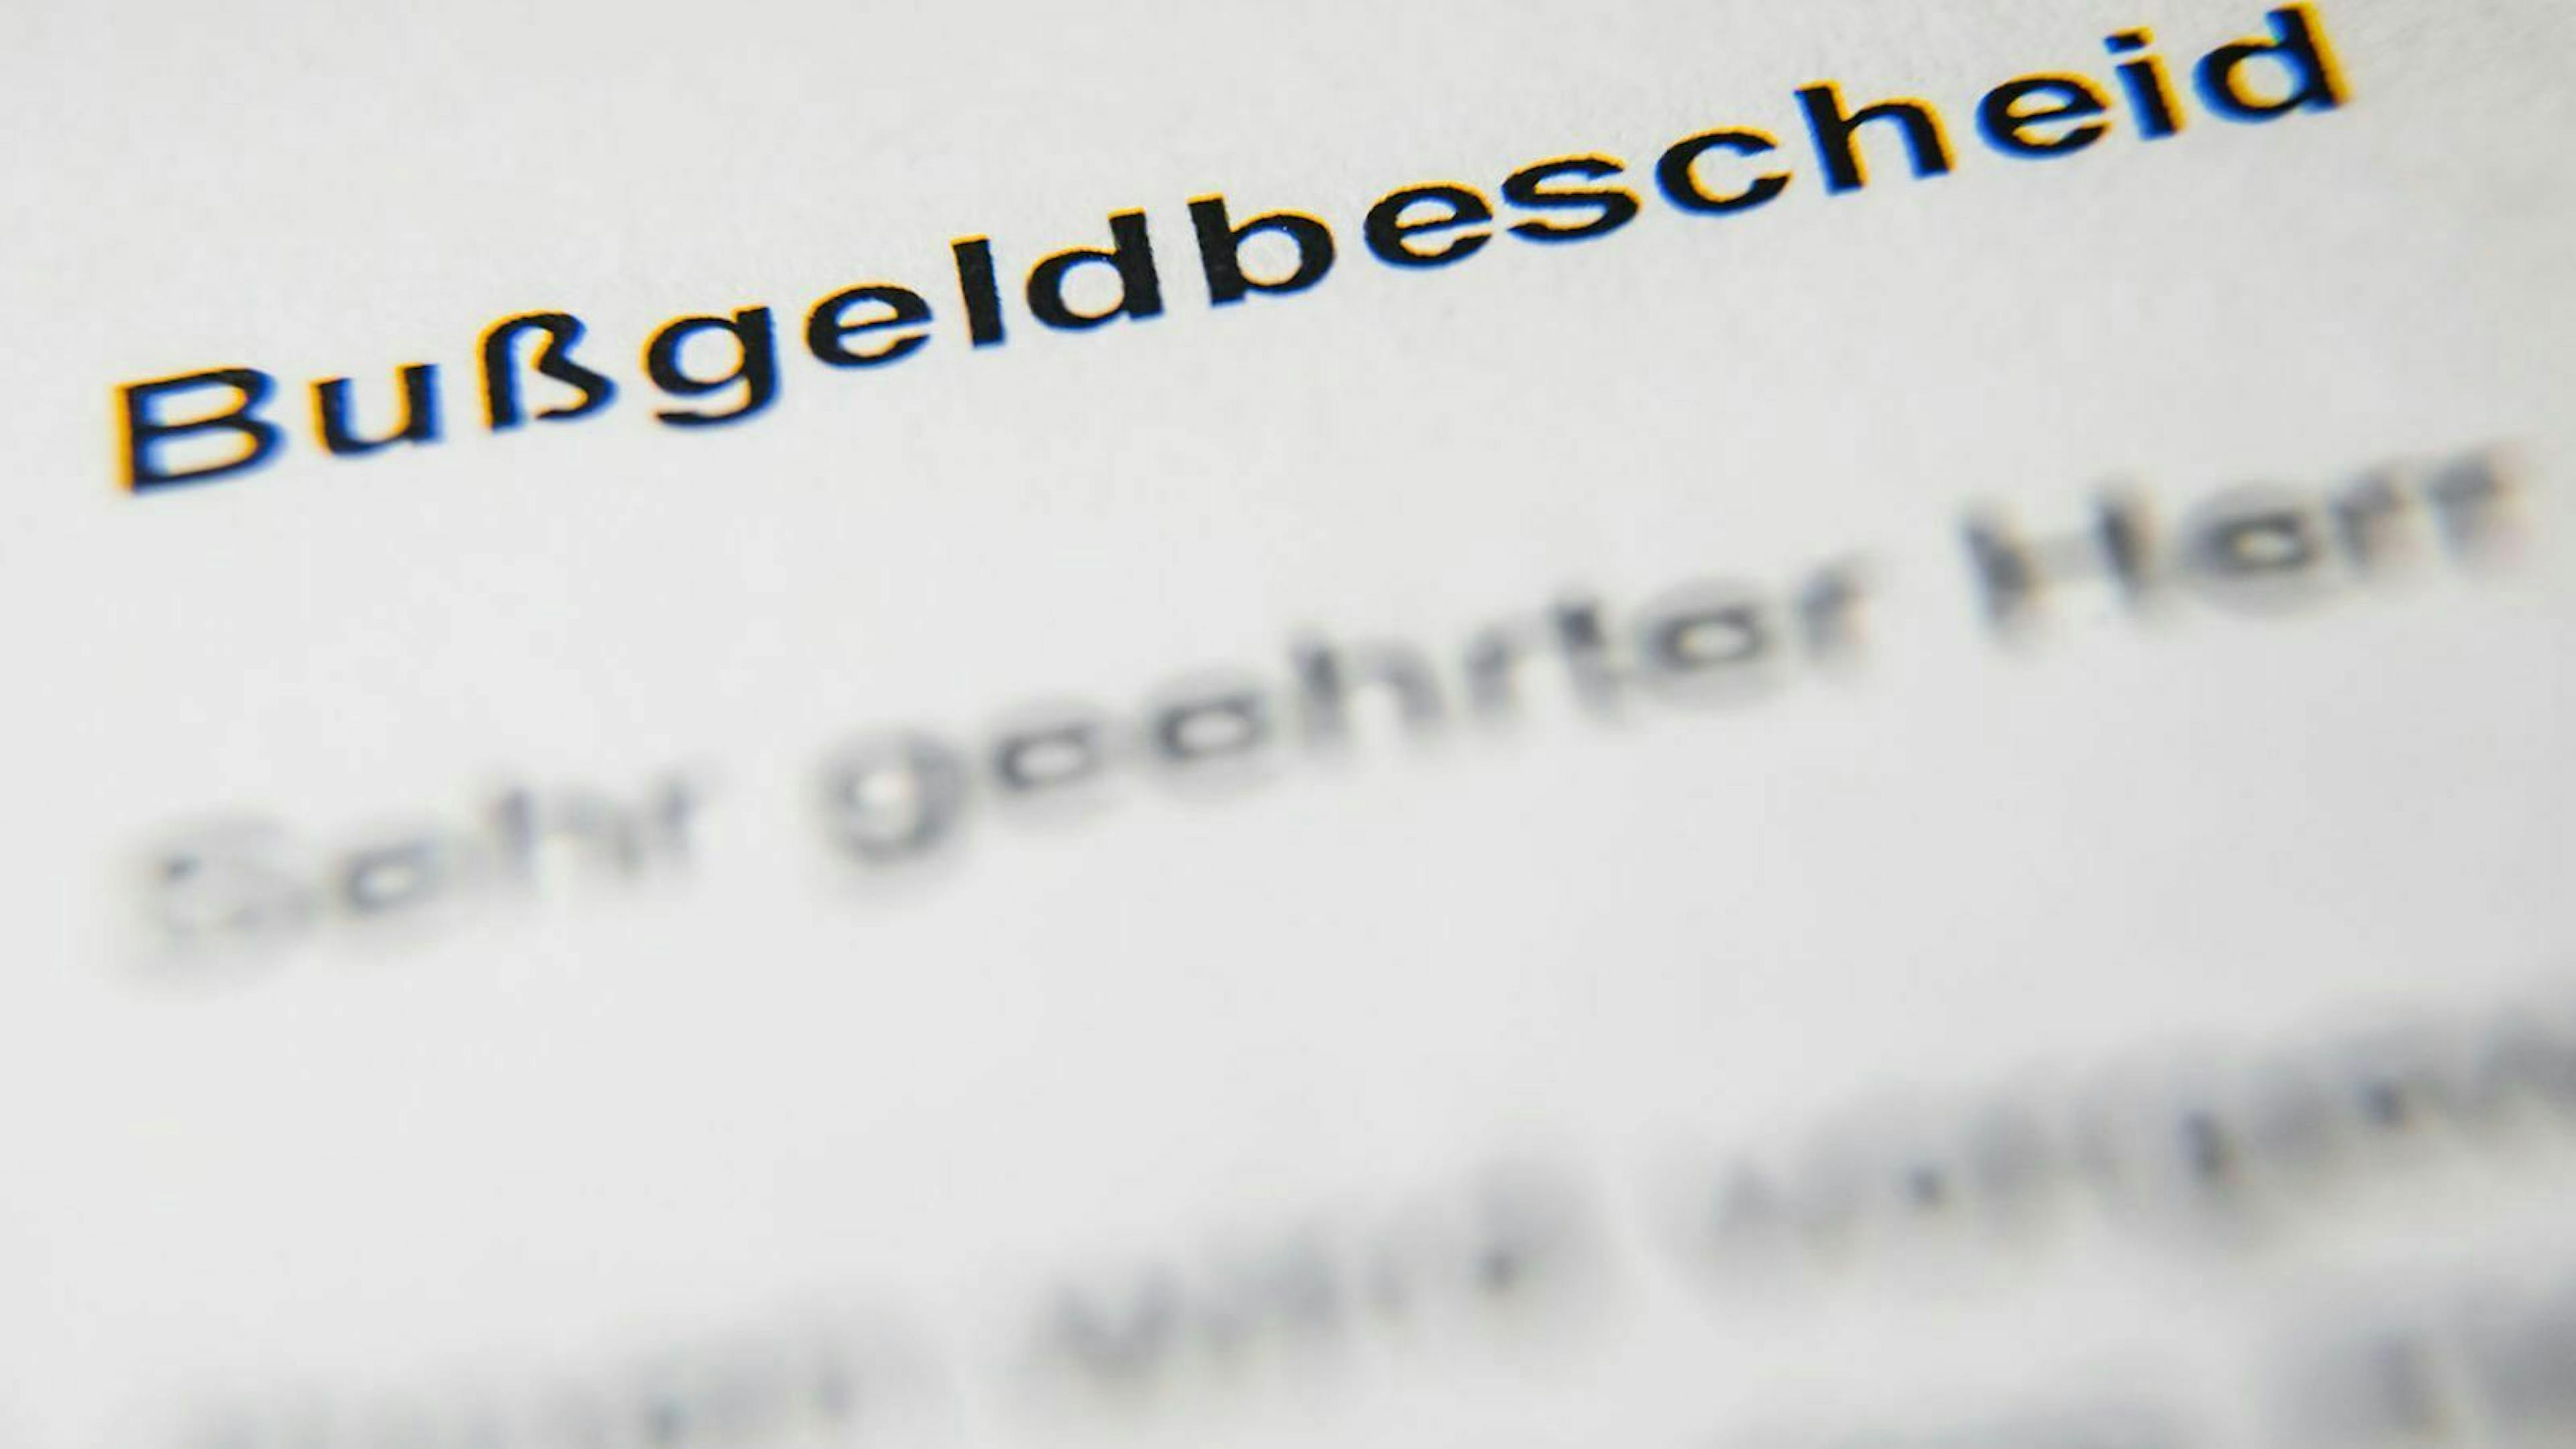 Bußgeldbescheide verjähren in Deutschland in der Regel nach drei Monaten. Danach besteht keine Zahlungspflicht mehr.